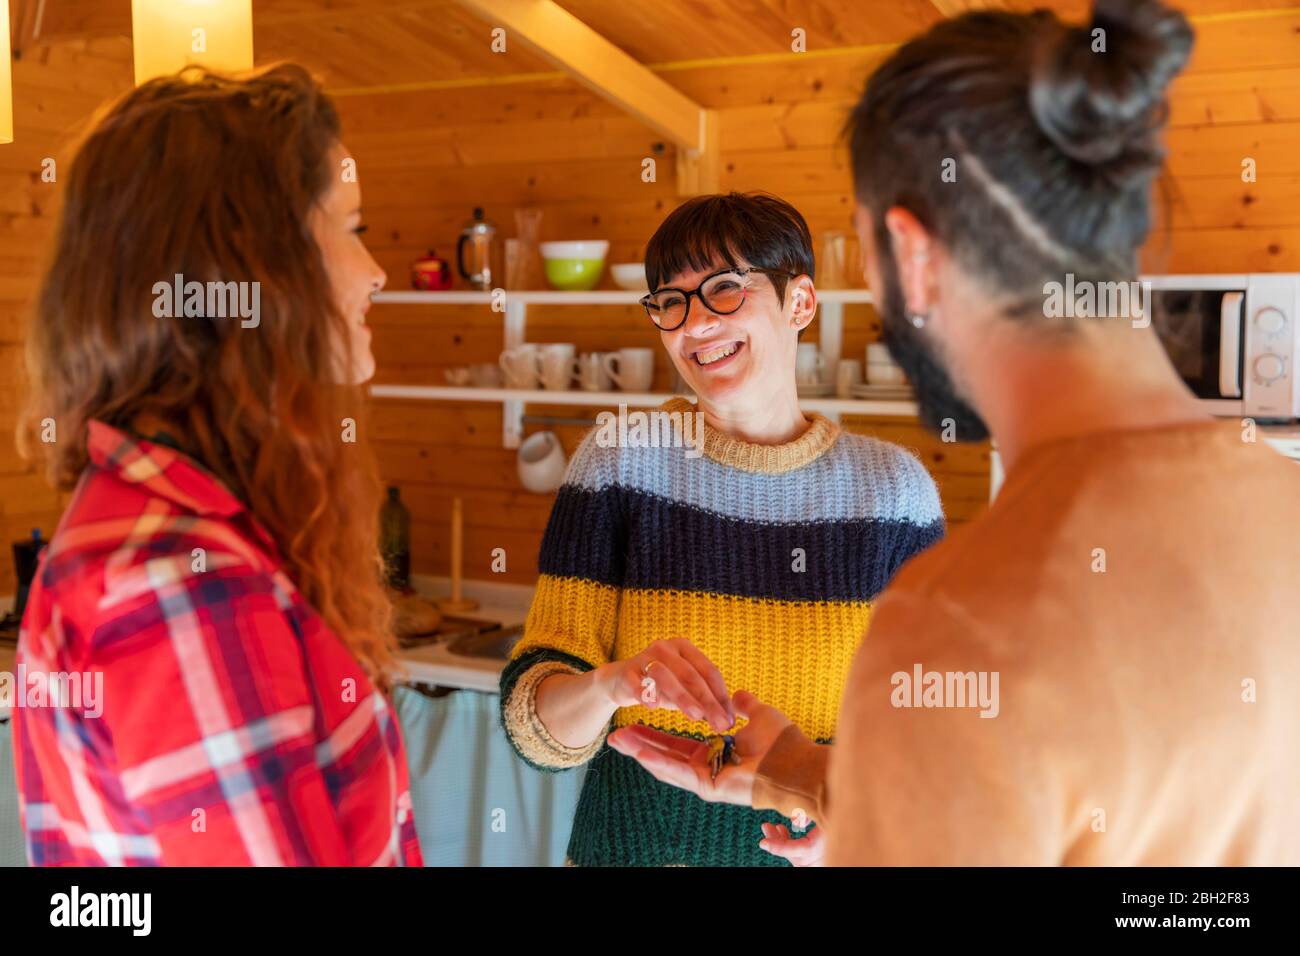 Gastgeber begrüßen junges Paar in einer Hütte auf dem Land Übergabe des Hausschlüssels Stockfoto